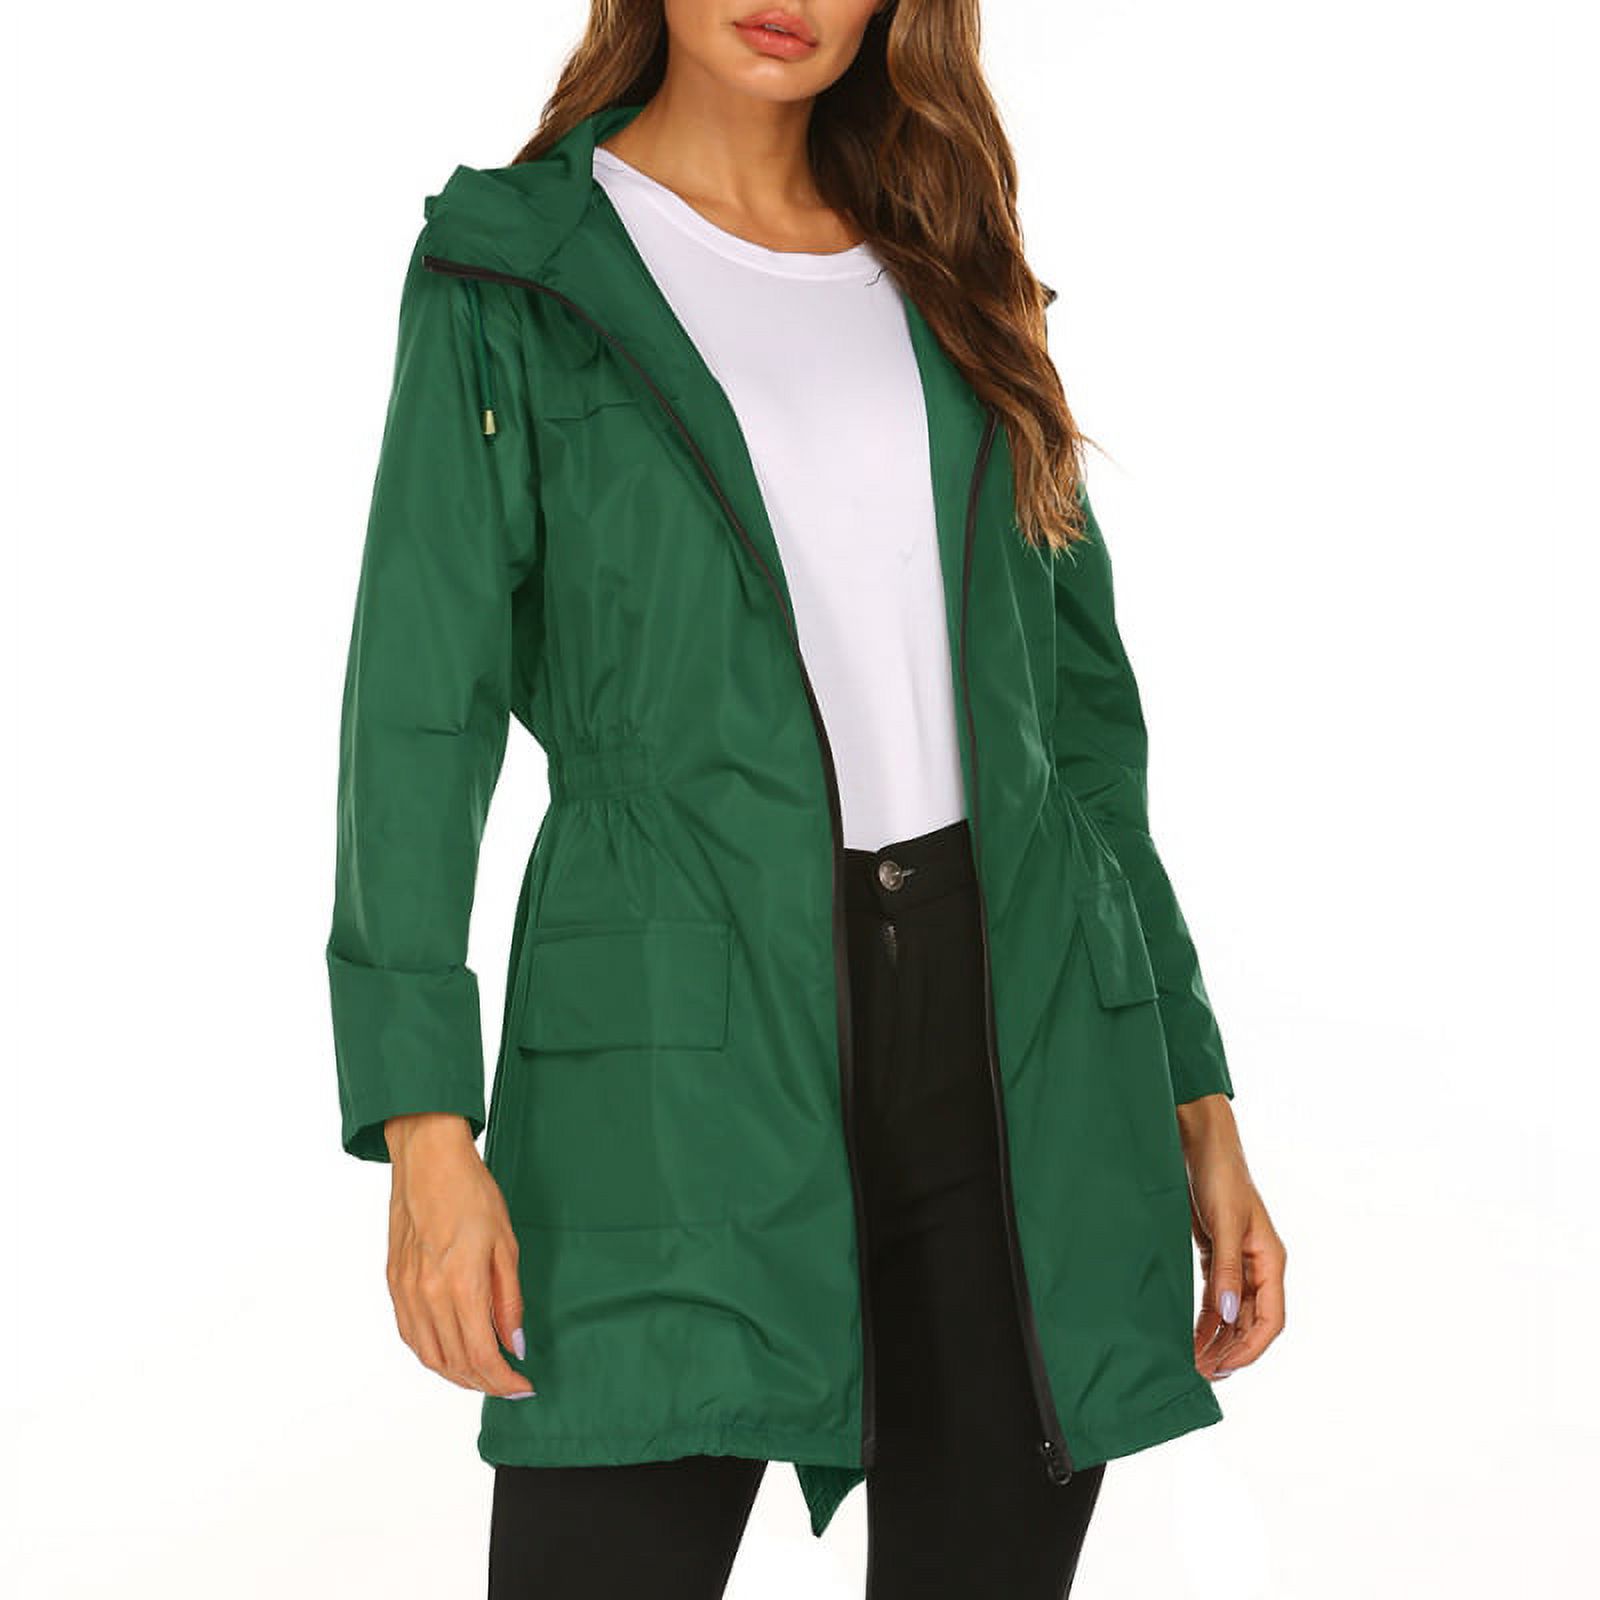 Women Waterproof Lightweight Rain Jacket Packable Outdoor Hooded Raincoat - image 2 of 5